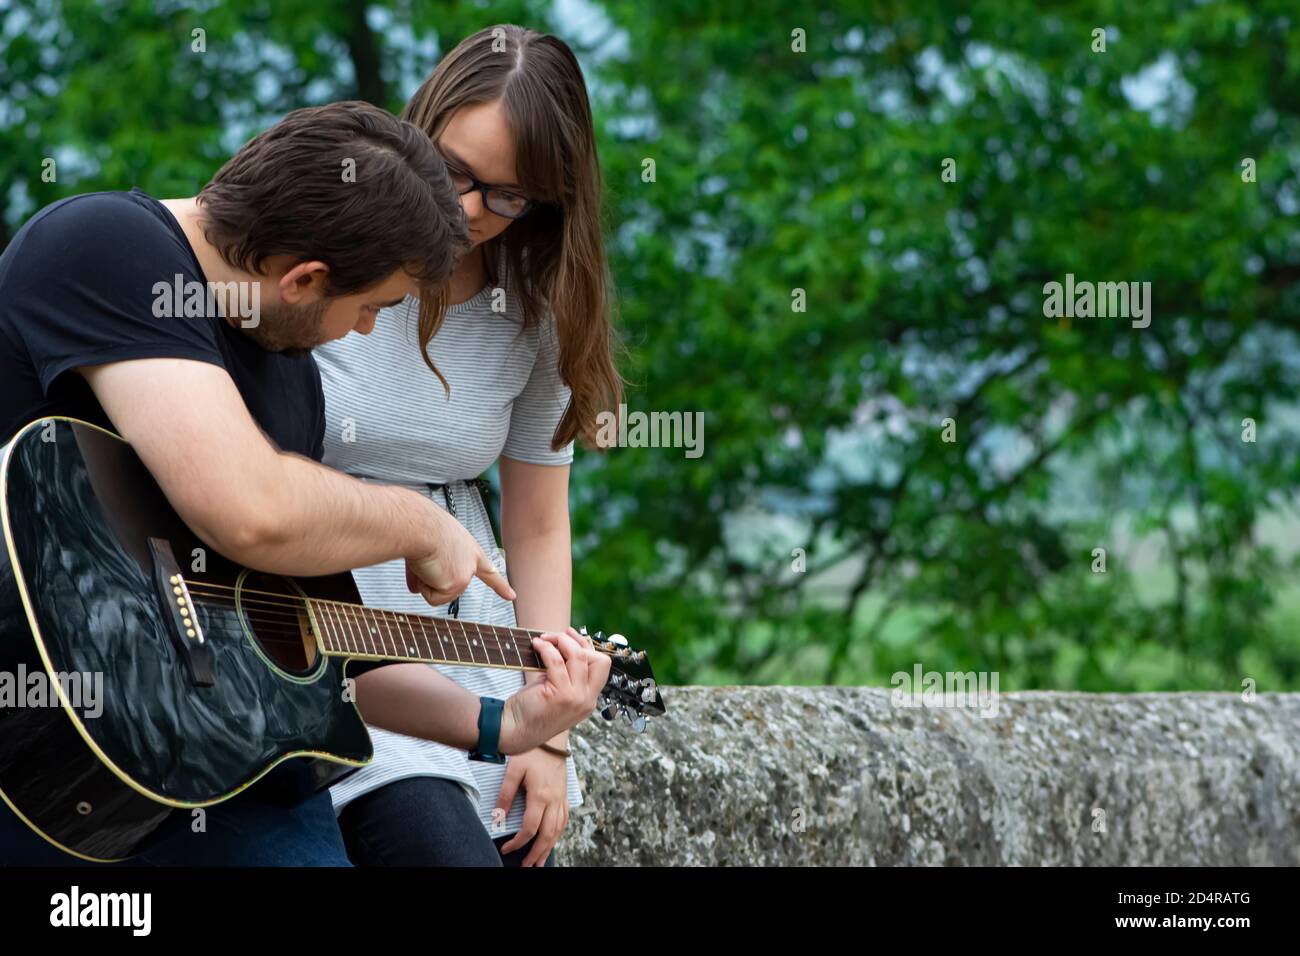 Frère enseignant soeur de jouer de la guitare dans la nature Banque D'Images